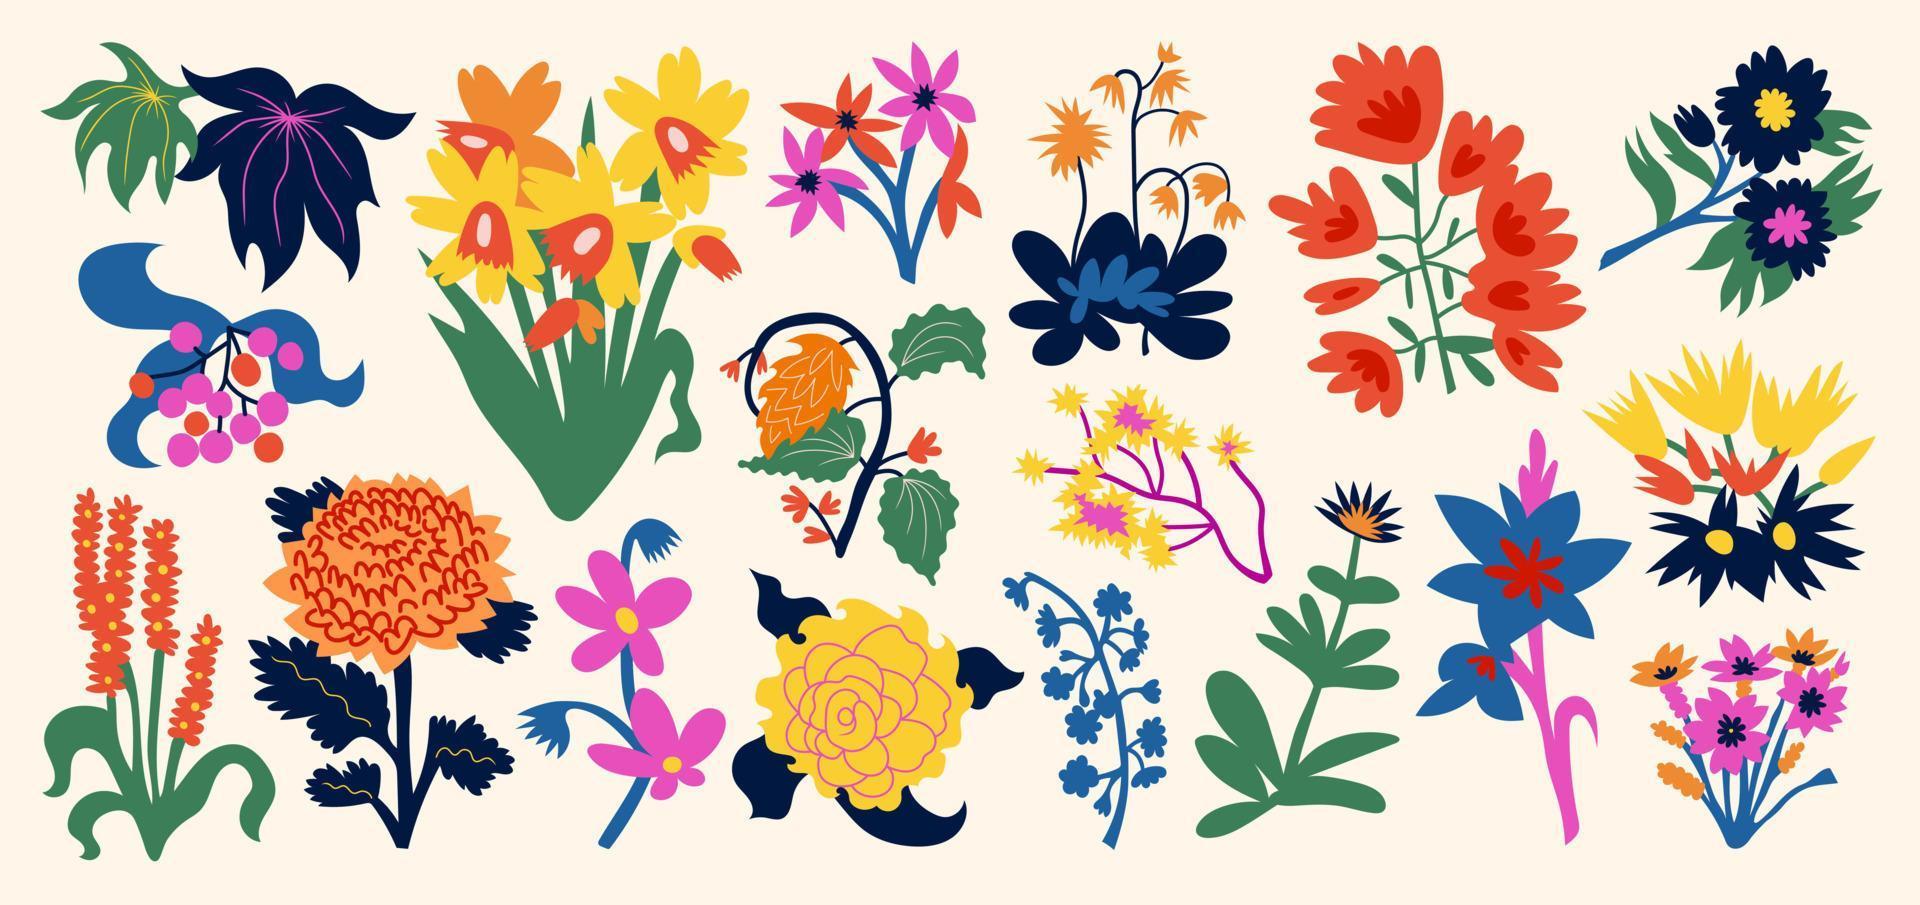 impostato di mazzi di fiori con fiori. interno la pittura. colorato illustrazioni di fiori per copertine, immagini. vettore illustrazione.